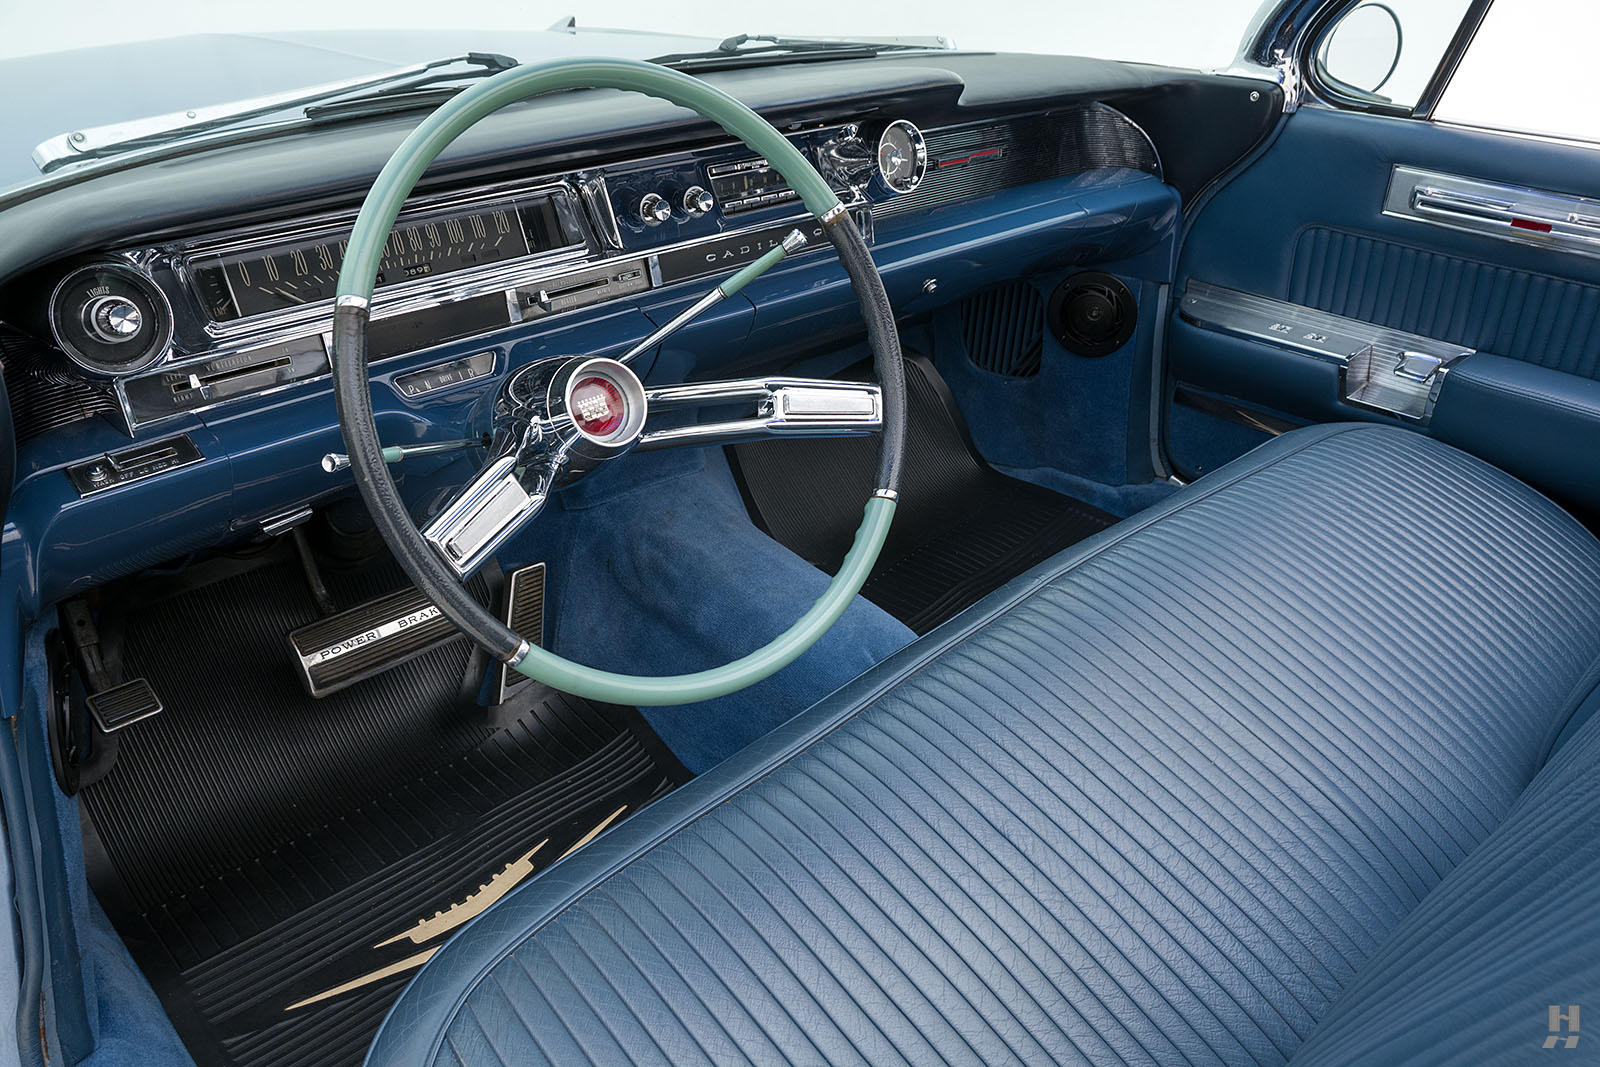 1959 Cadillac Coupe de Ville